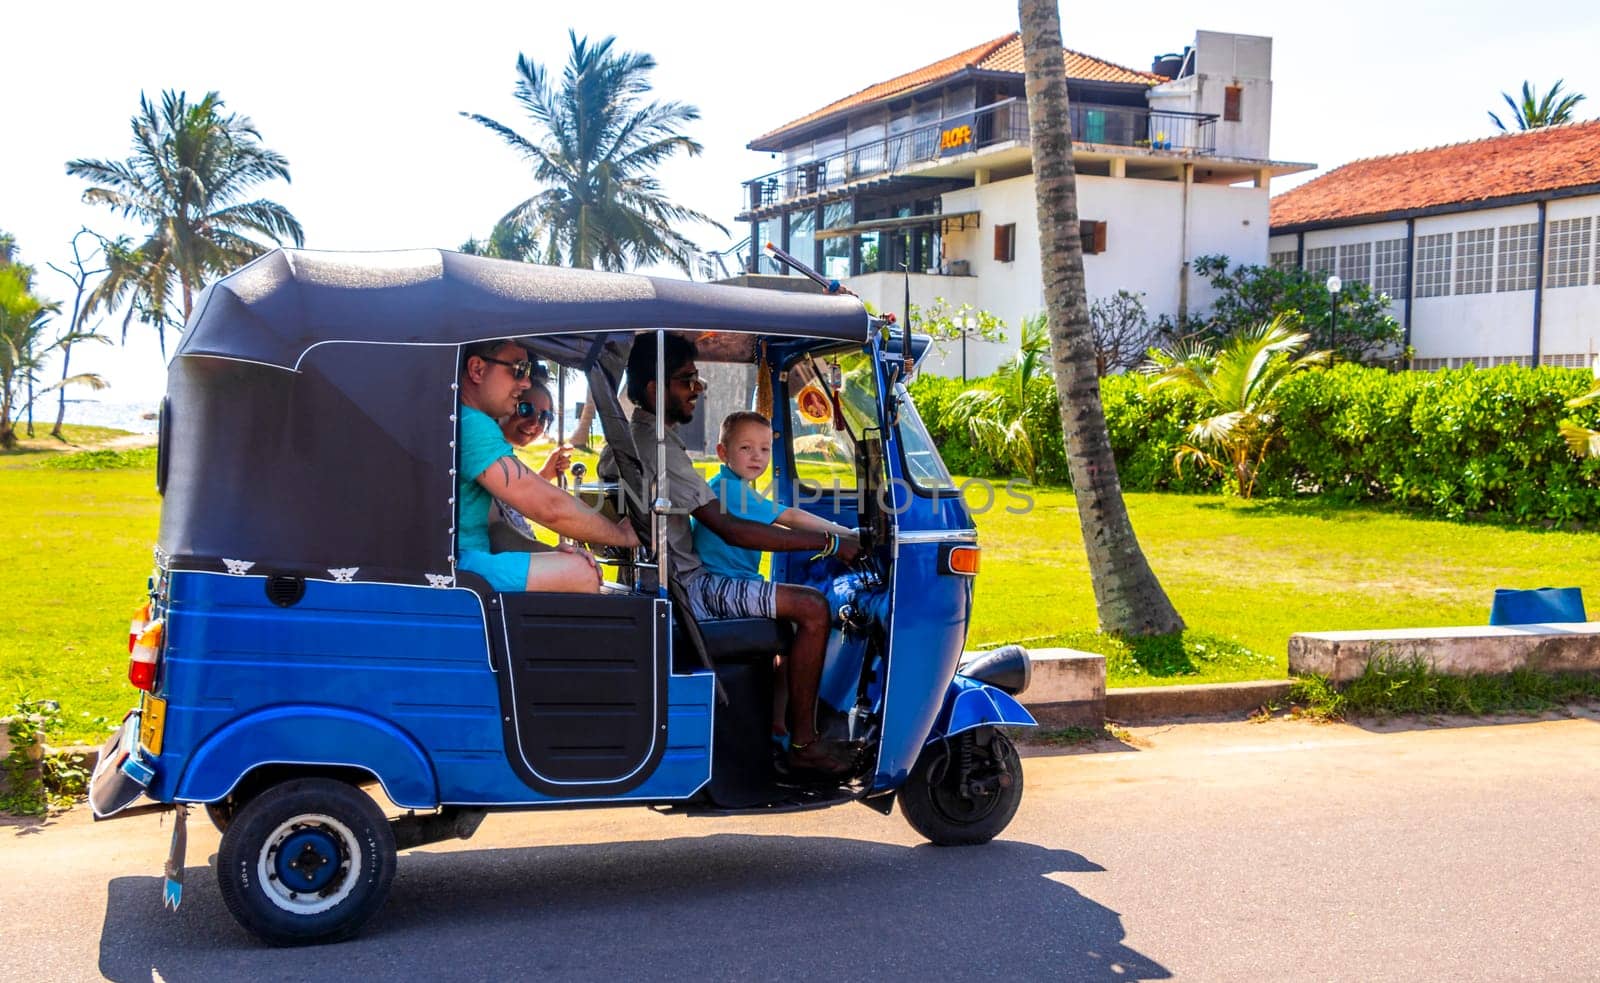 Blue Rickshaw Tuk Tuk cab vehicle Bentota Beach Sri Lanka. by Arkadij